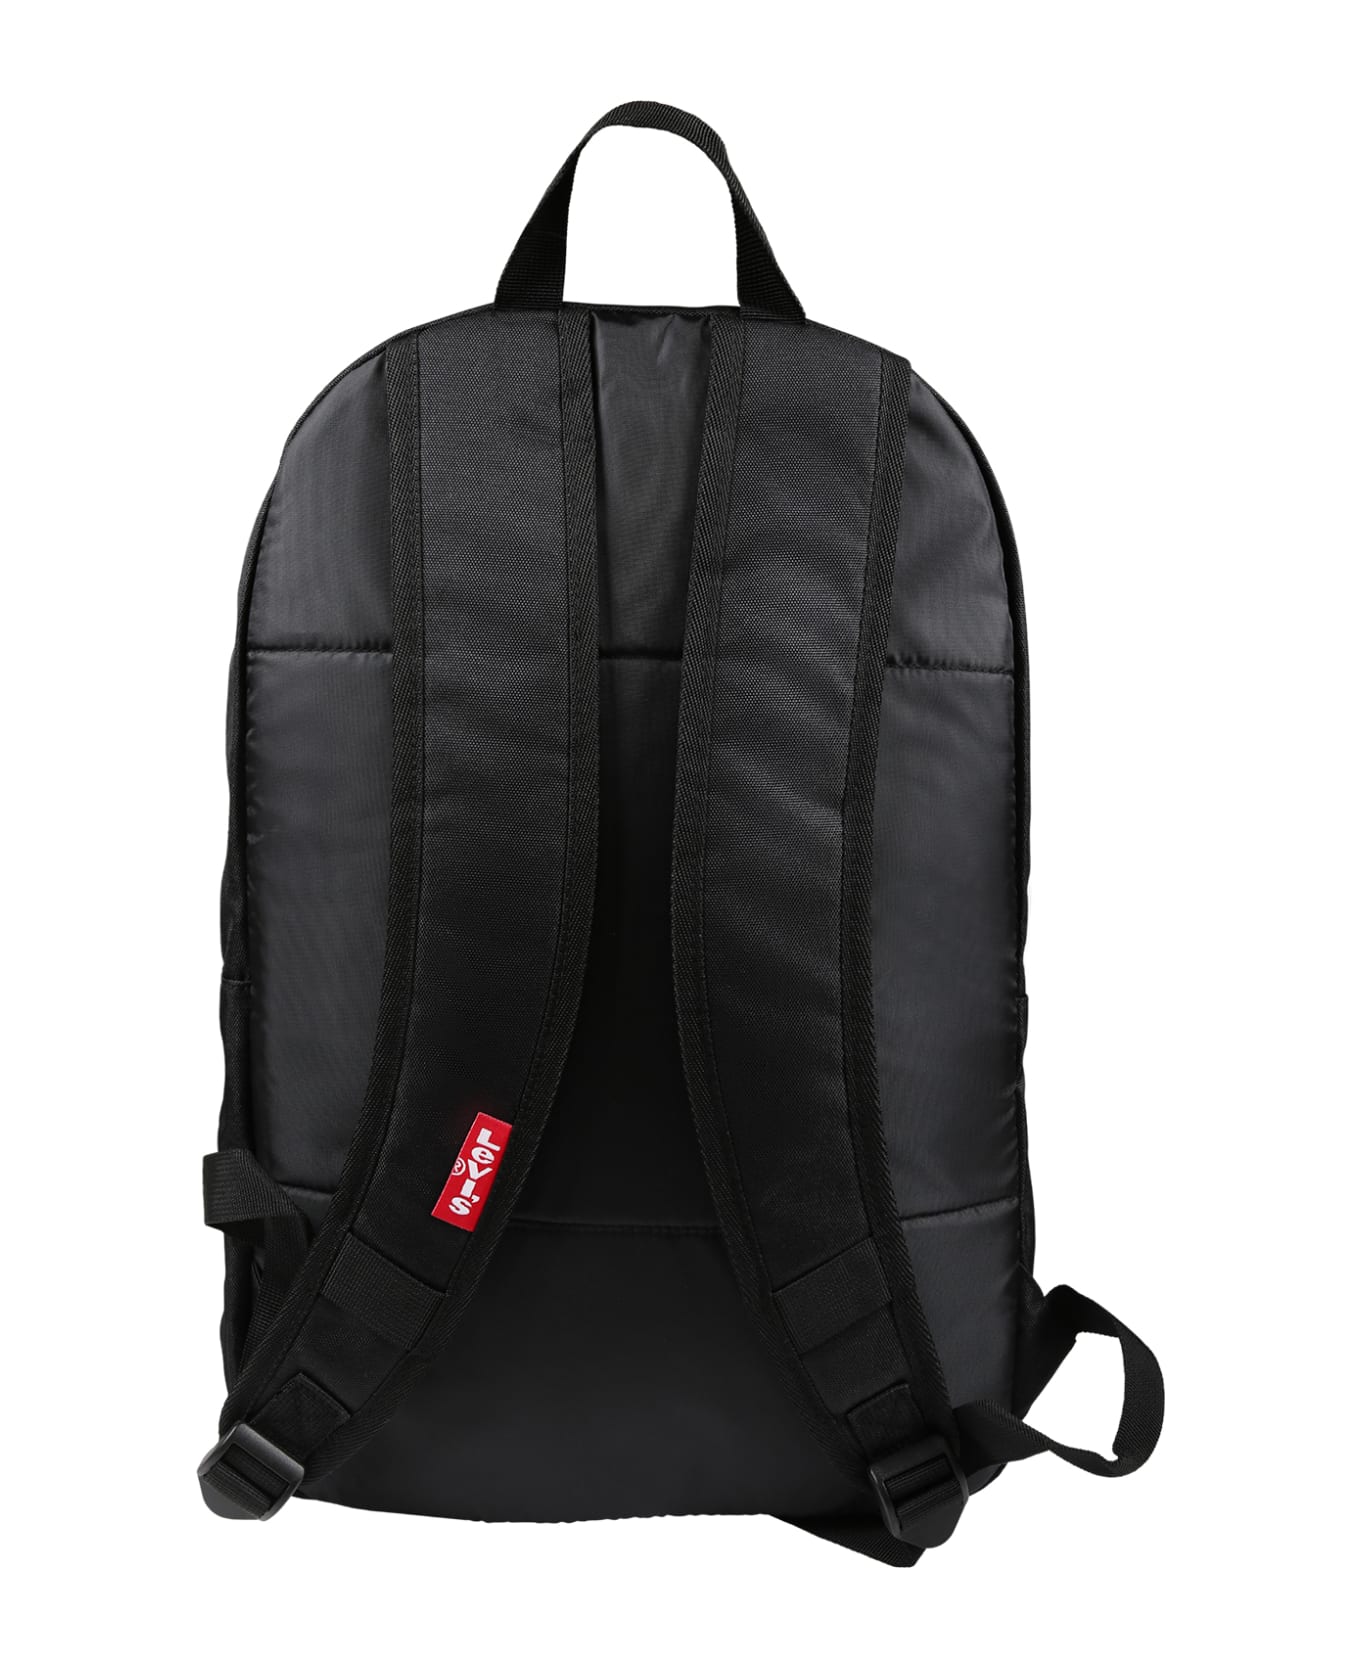 Levi's Black Backpack For Kids - Black